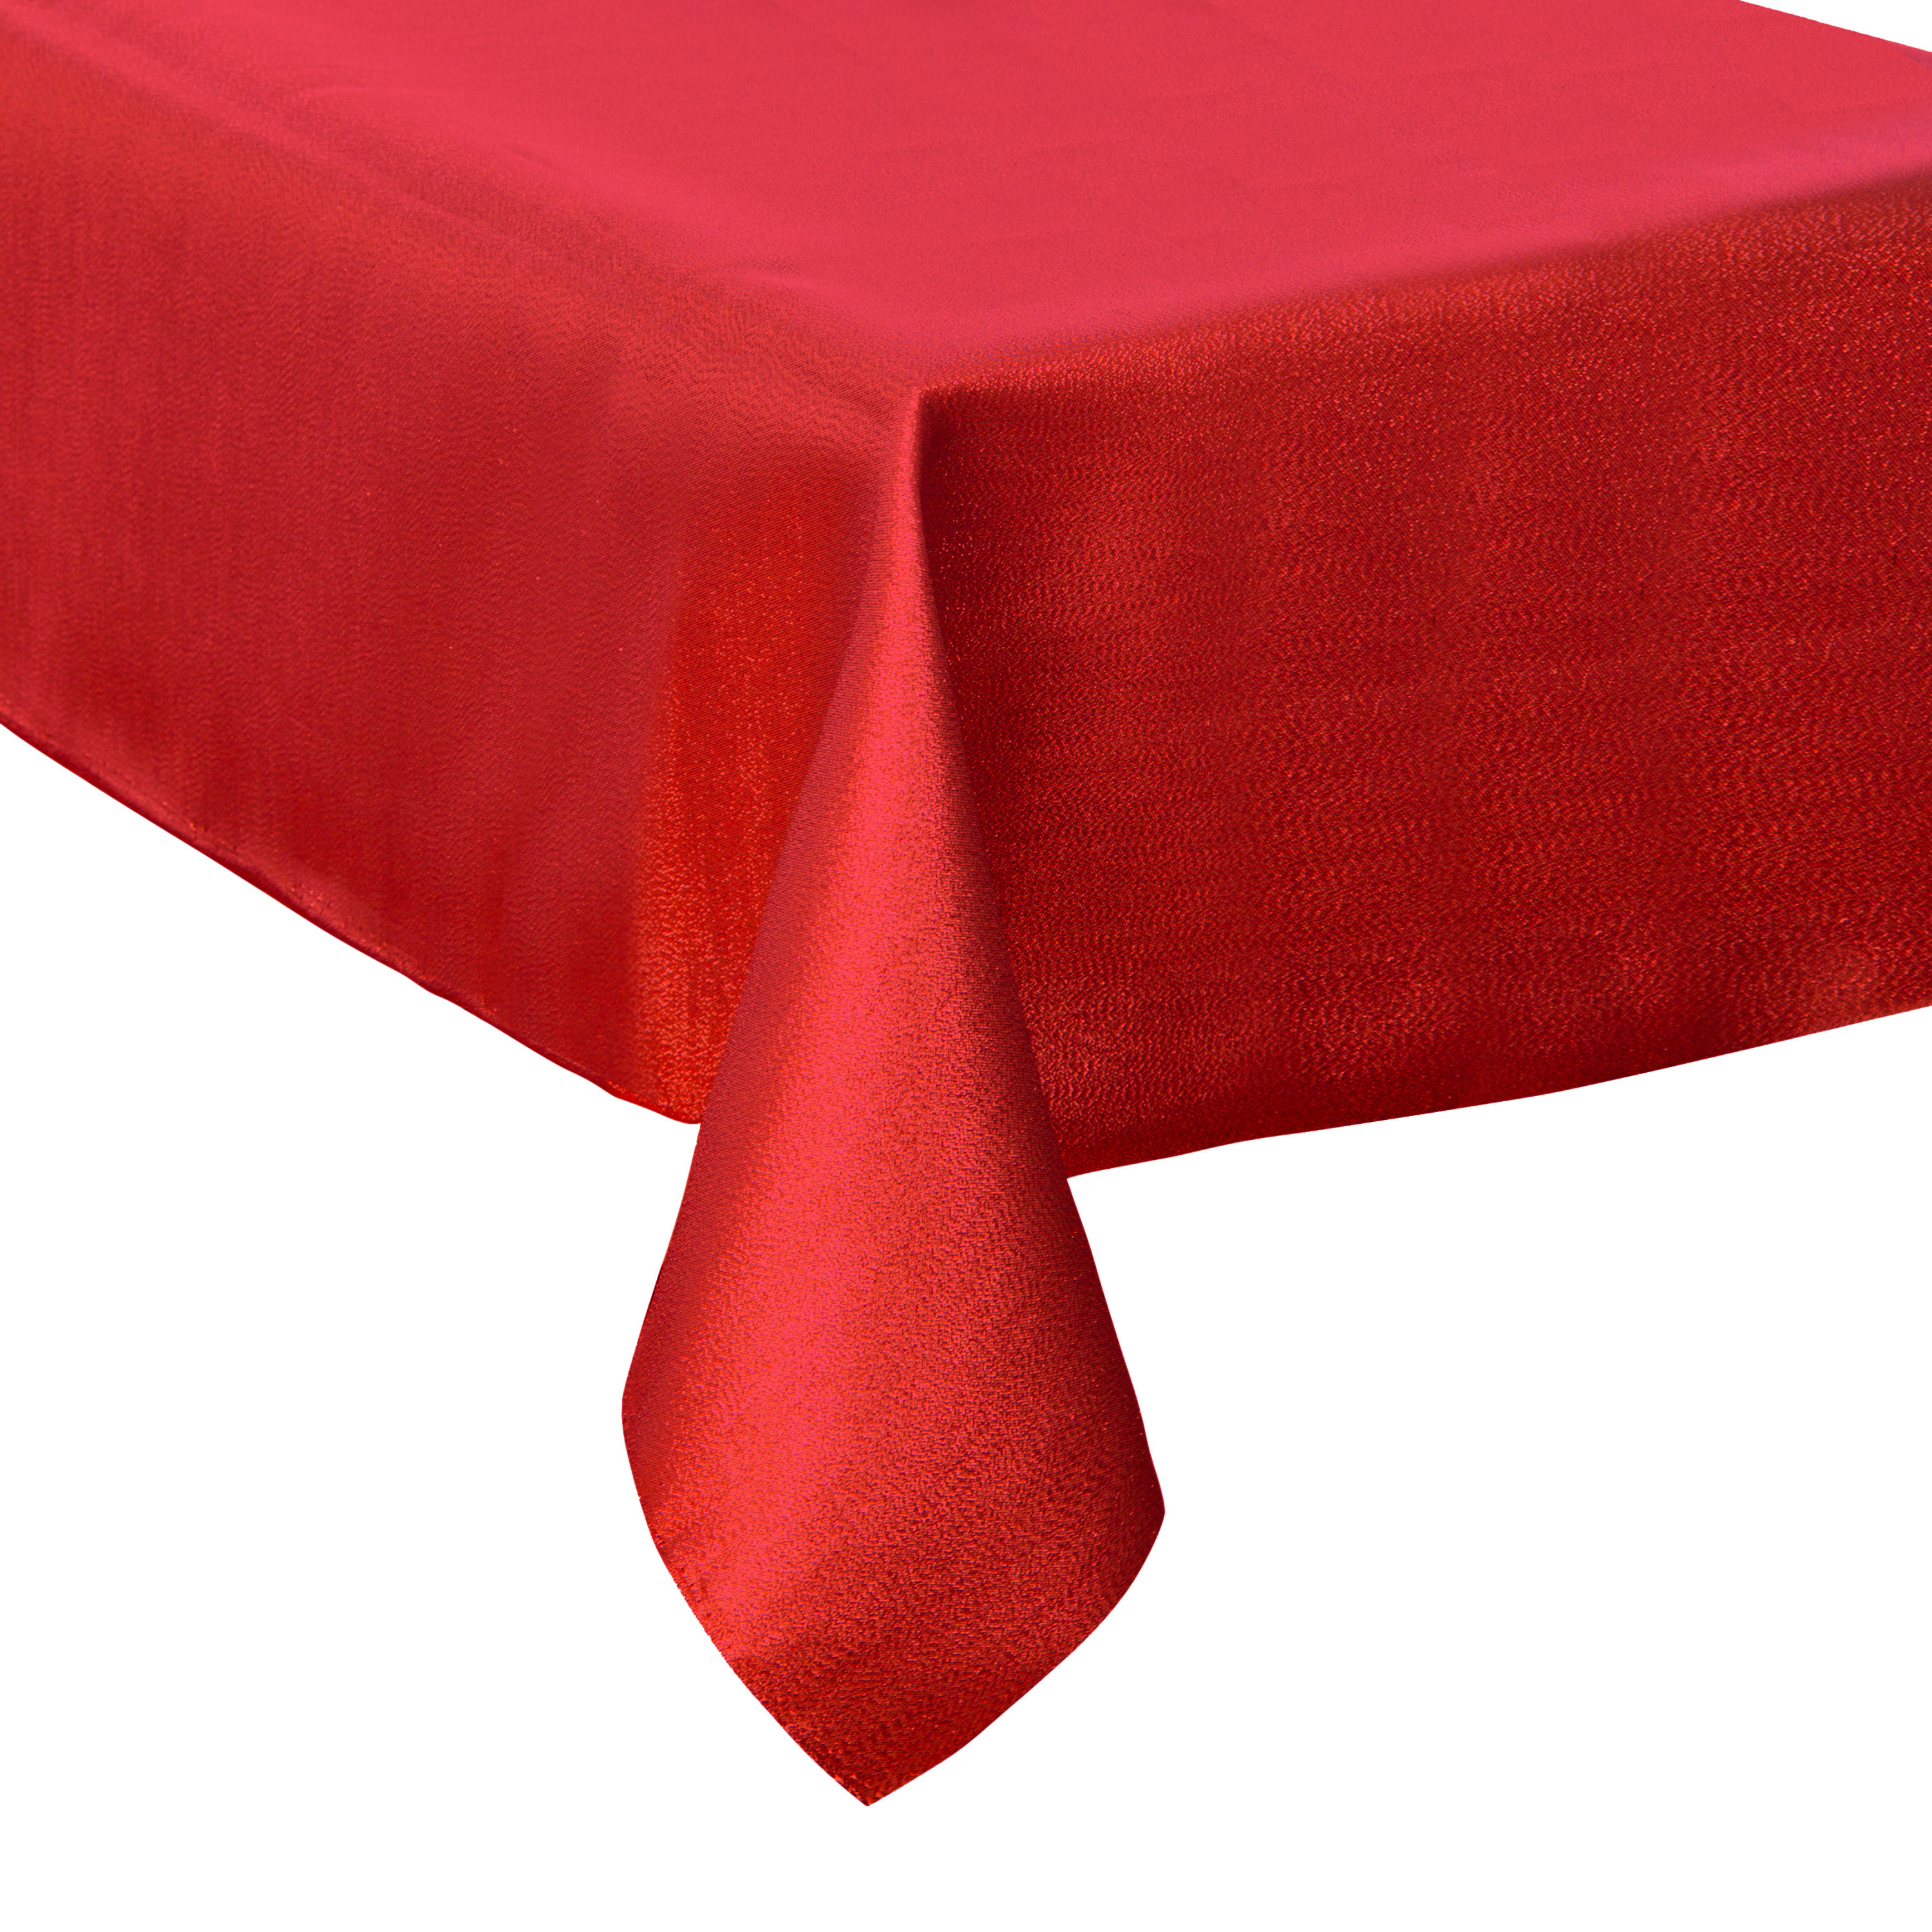 Tafelkleed-tafellaken rood sparkling effect van polyester formaat 140 x 240 cm